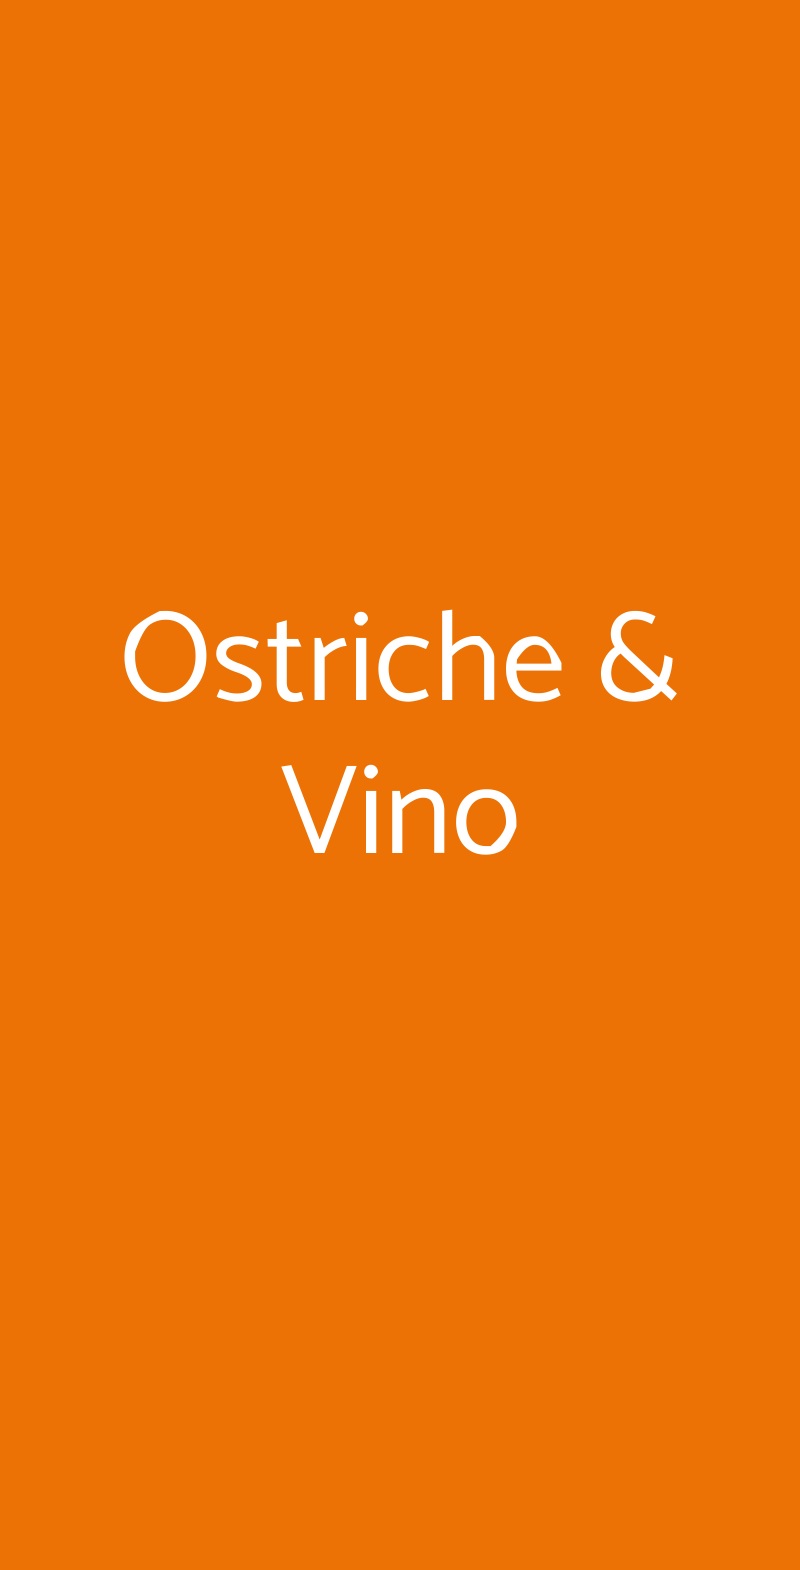 Ostriche & Vino Milano menù 1 pagina